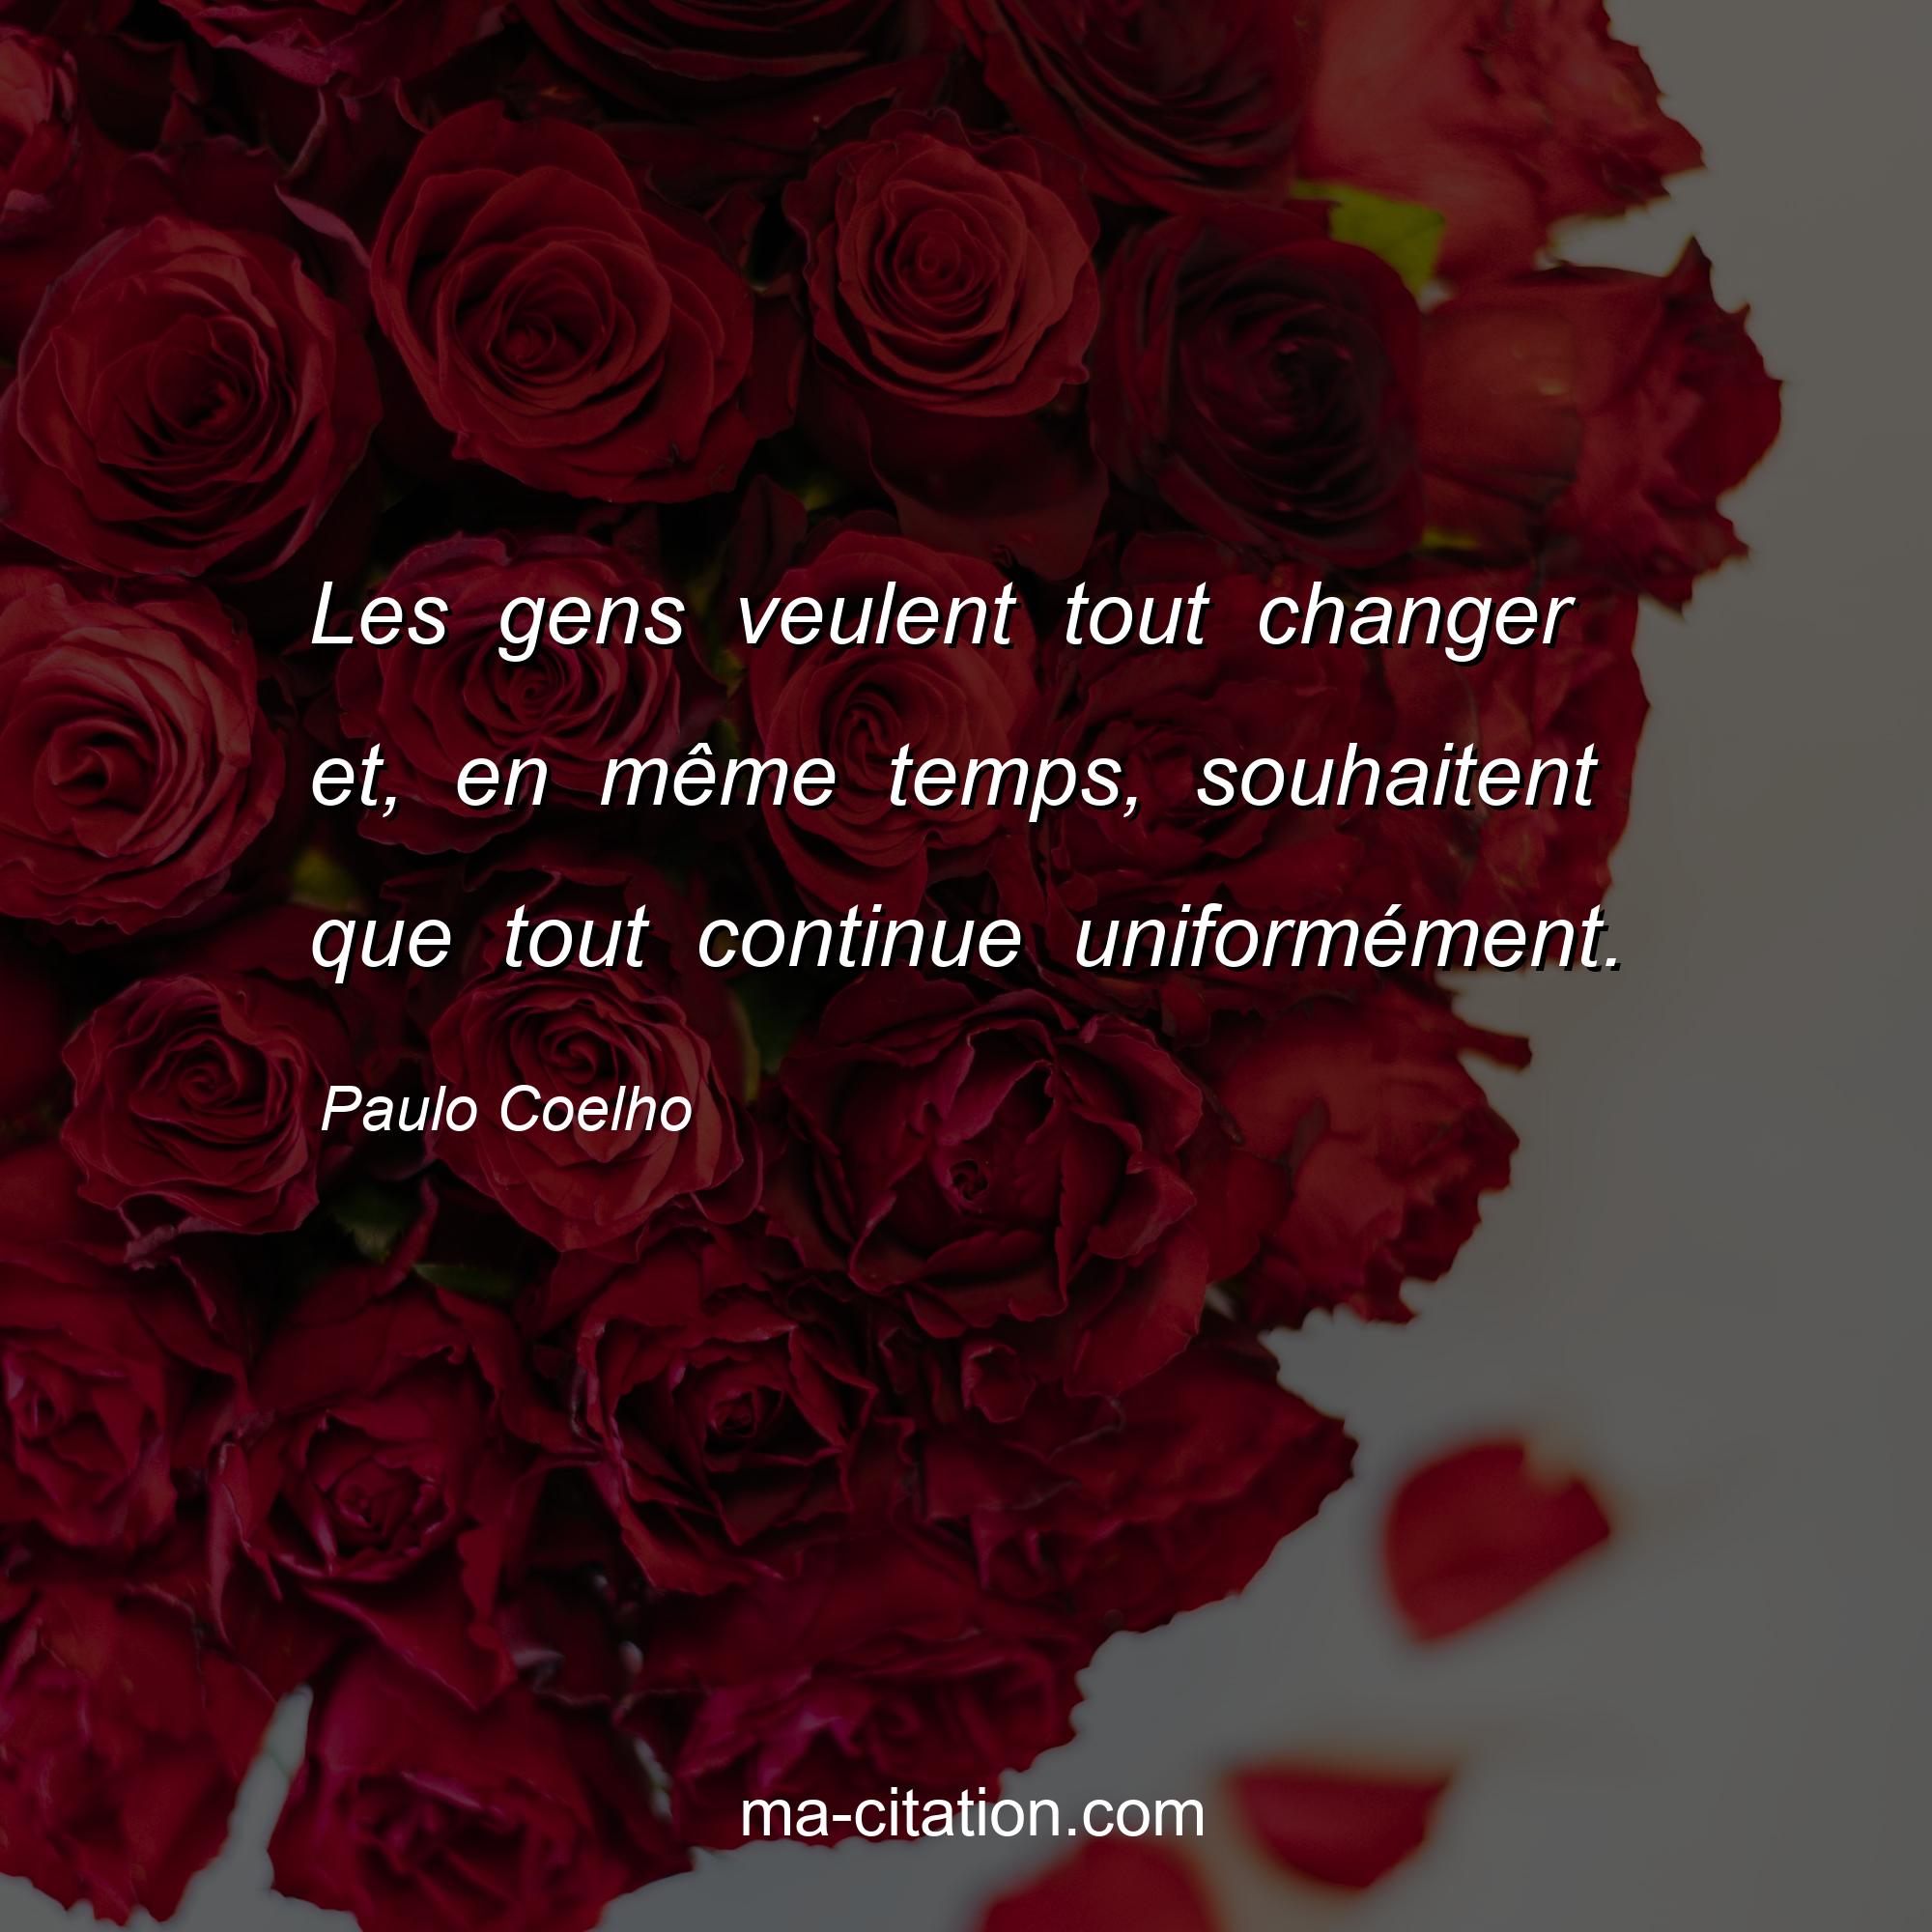 Paulo Coelho : Les gens veulent tout changer et, en même temps, souhaitent que tout continue uniformément.